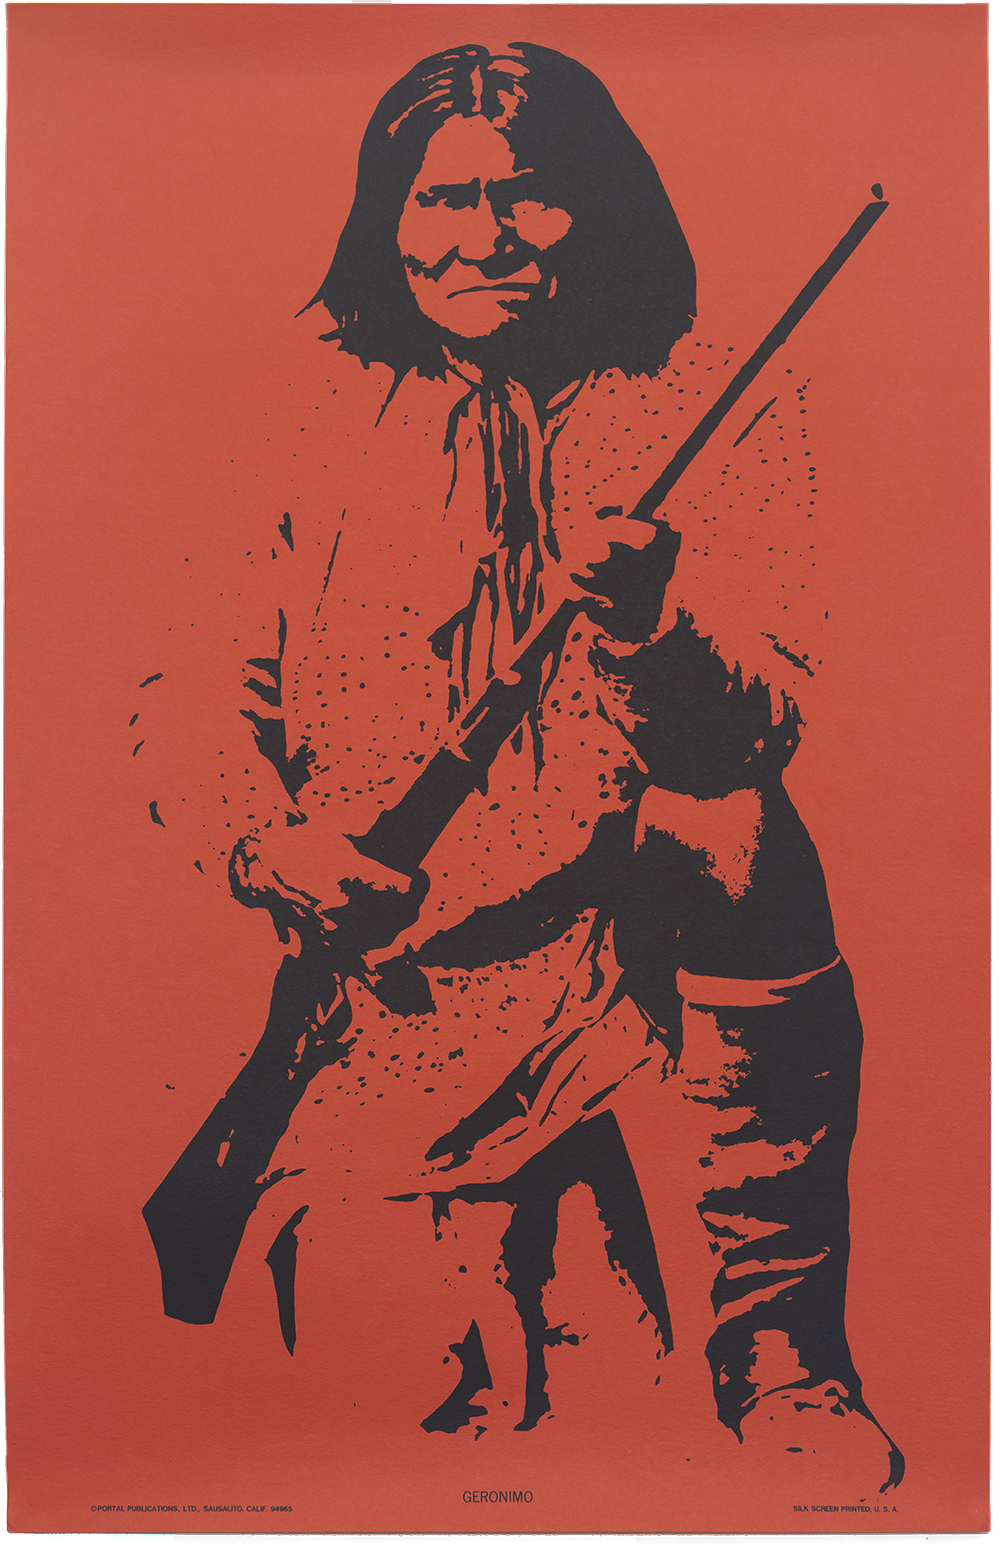 Portal Publications, Geronimo, c.1970 